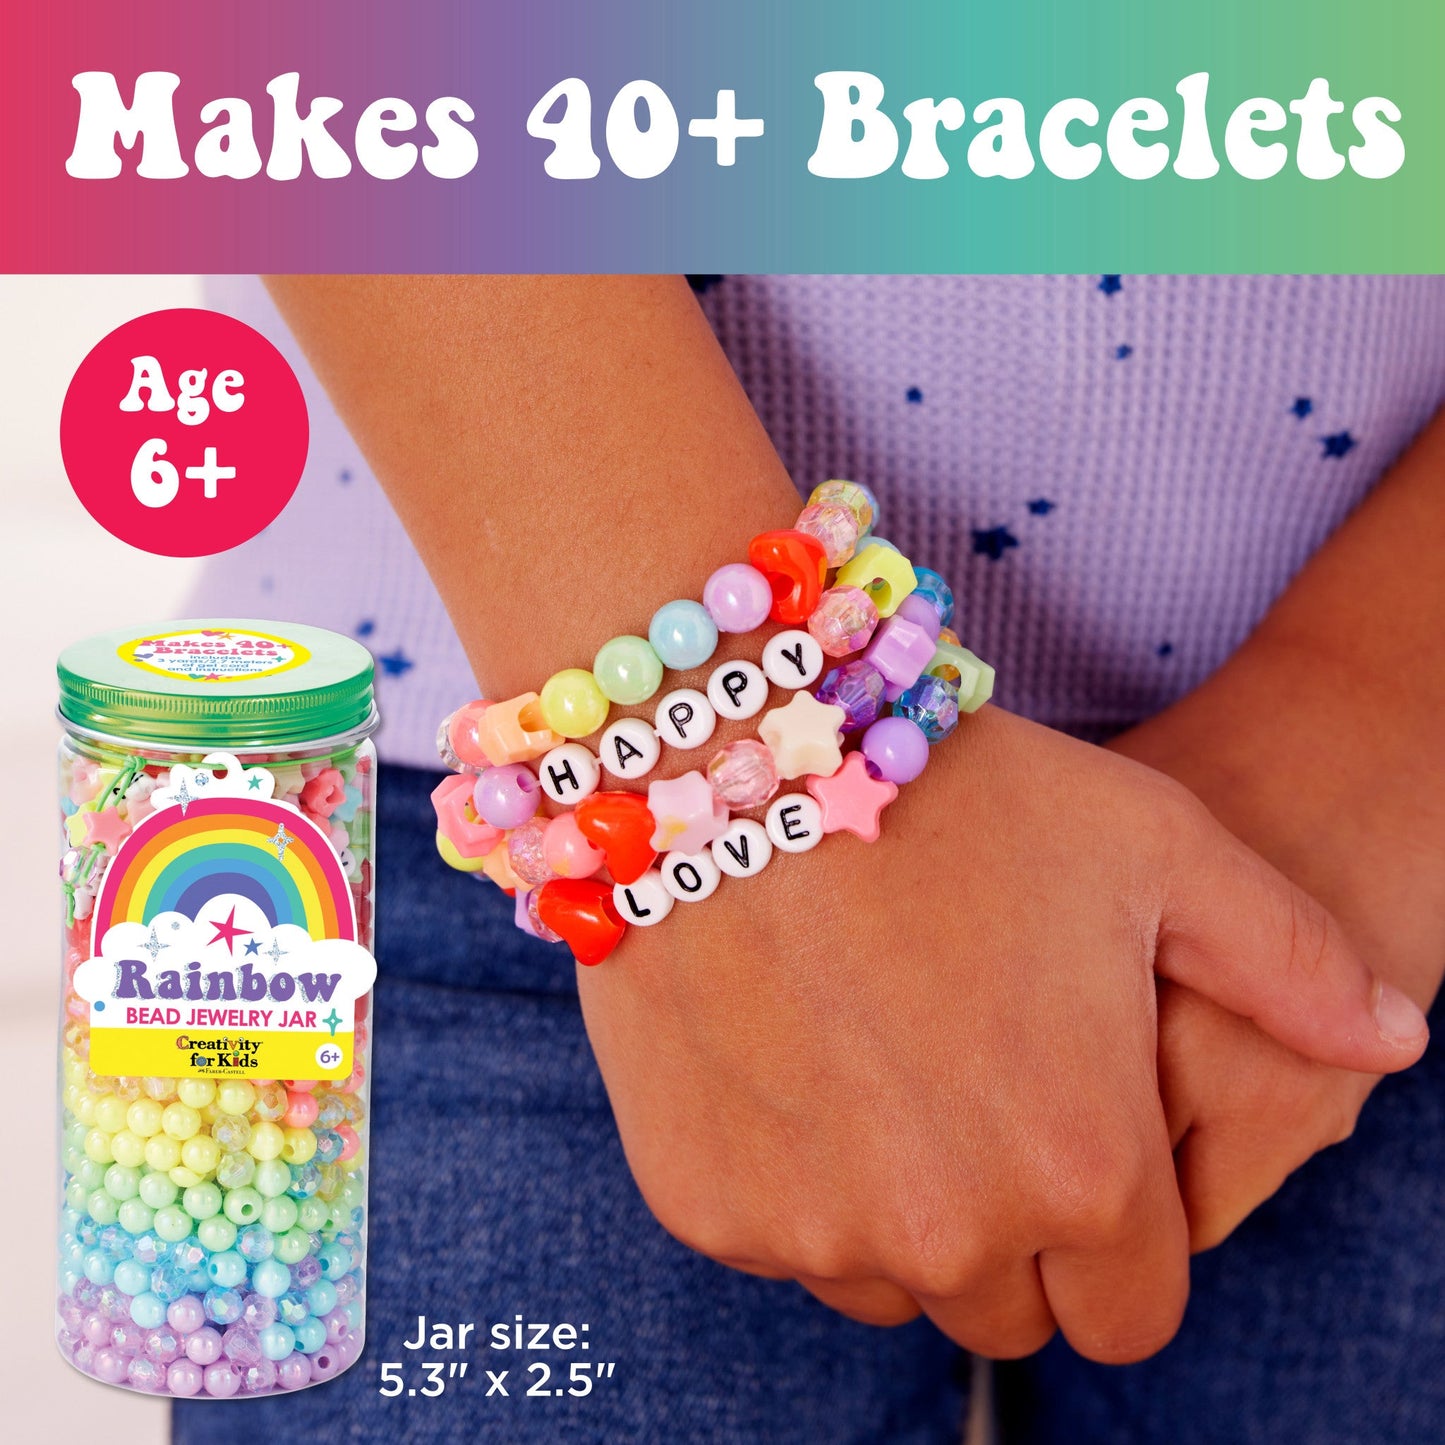 Rainbow Bead Jewelry